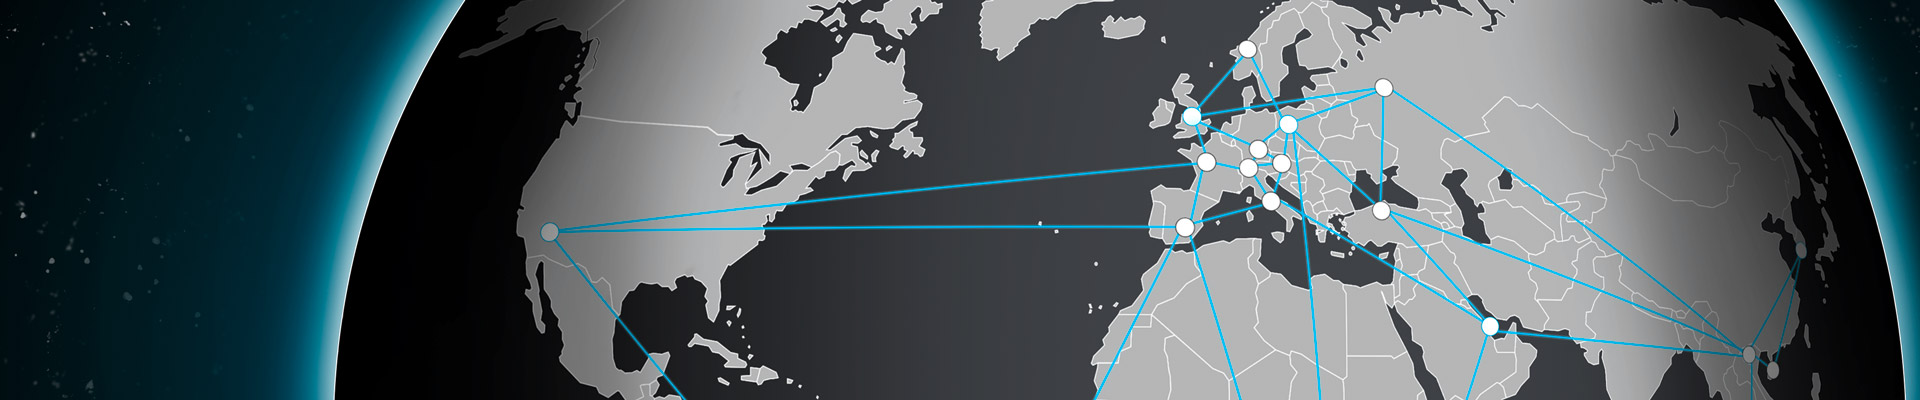 Dallmeier network locations worldwide